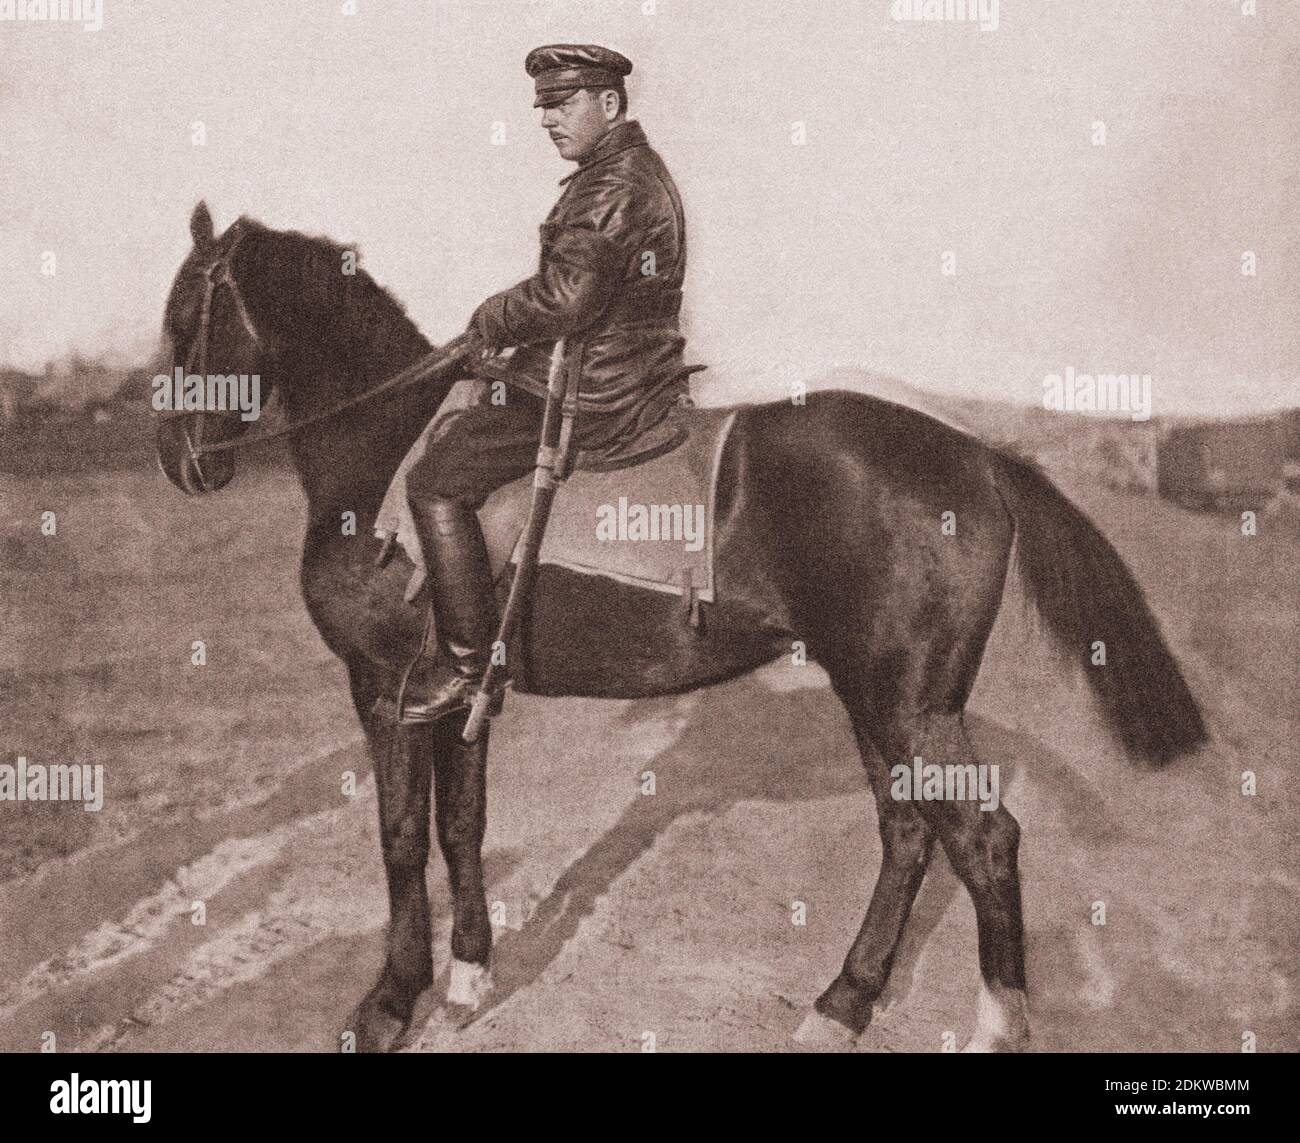 Archivfoto von Klim Woroshilov. Russische Bürgerkriegszeit. 1918 Klim Woroschilow (1881 – 1969), war ein prominenter sowjetischer Militäroffizier und Politiker Stockfoto